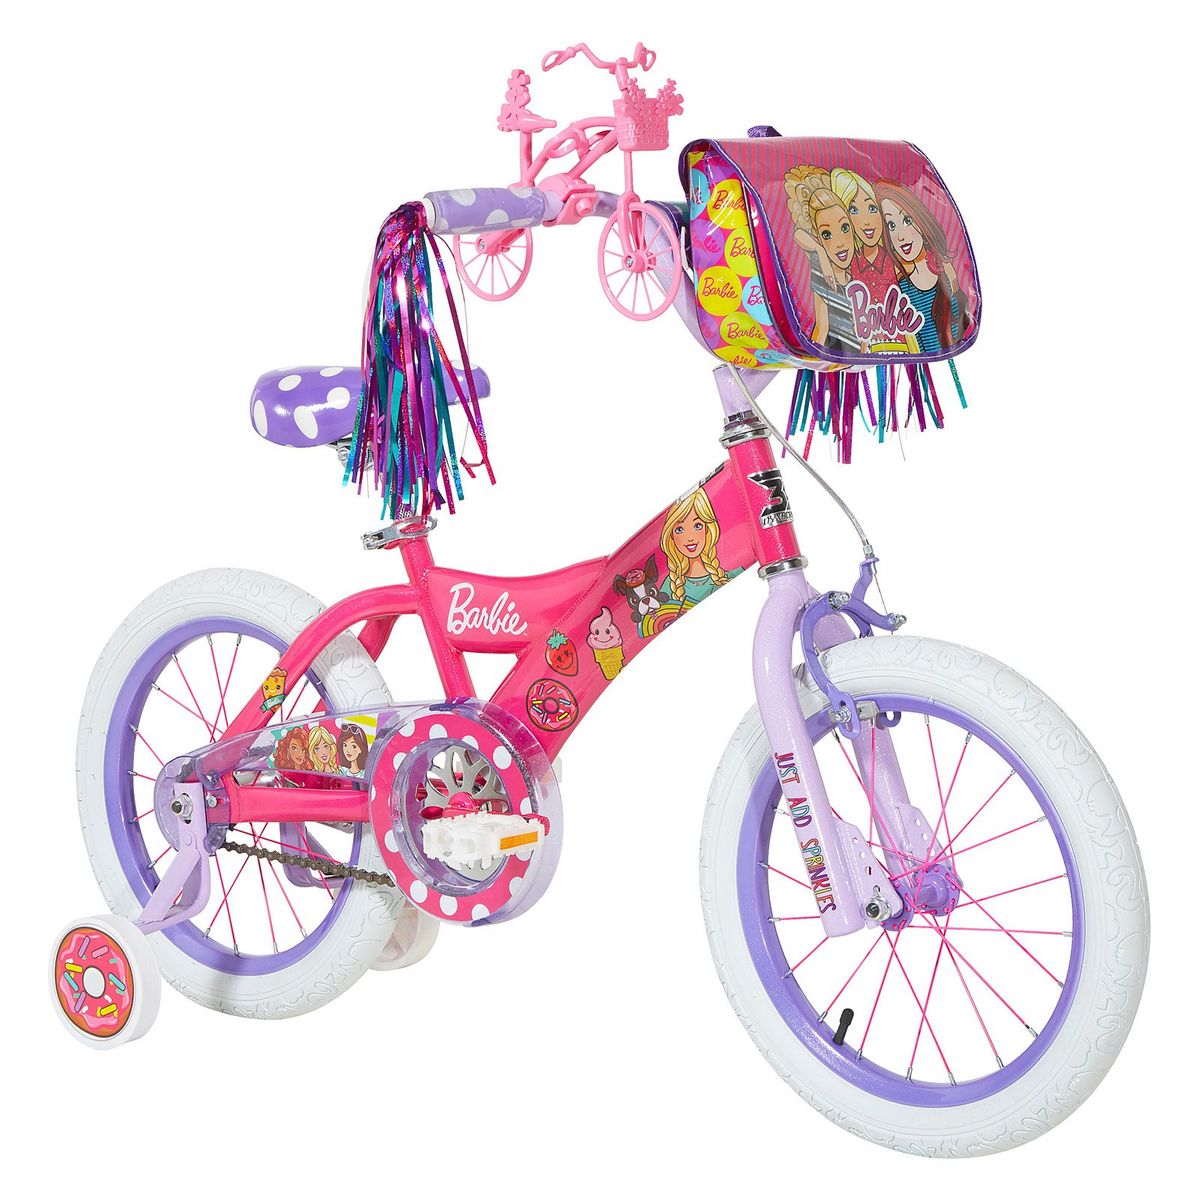 【超安い】 未使用 送料無料 Dynacraft 16インチバービーバイク 女の子用 ピンク 海外通販 16 In. Barbie Bike for Girls Pink kanagaway.com kanagaway.com